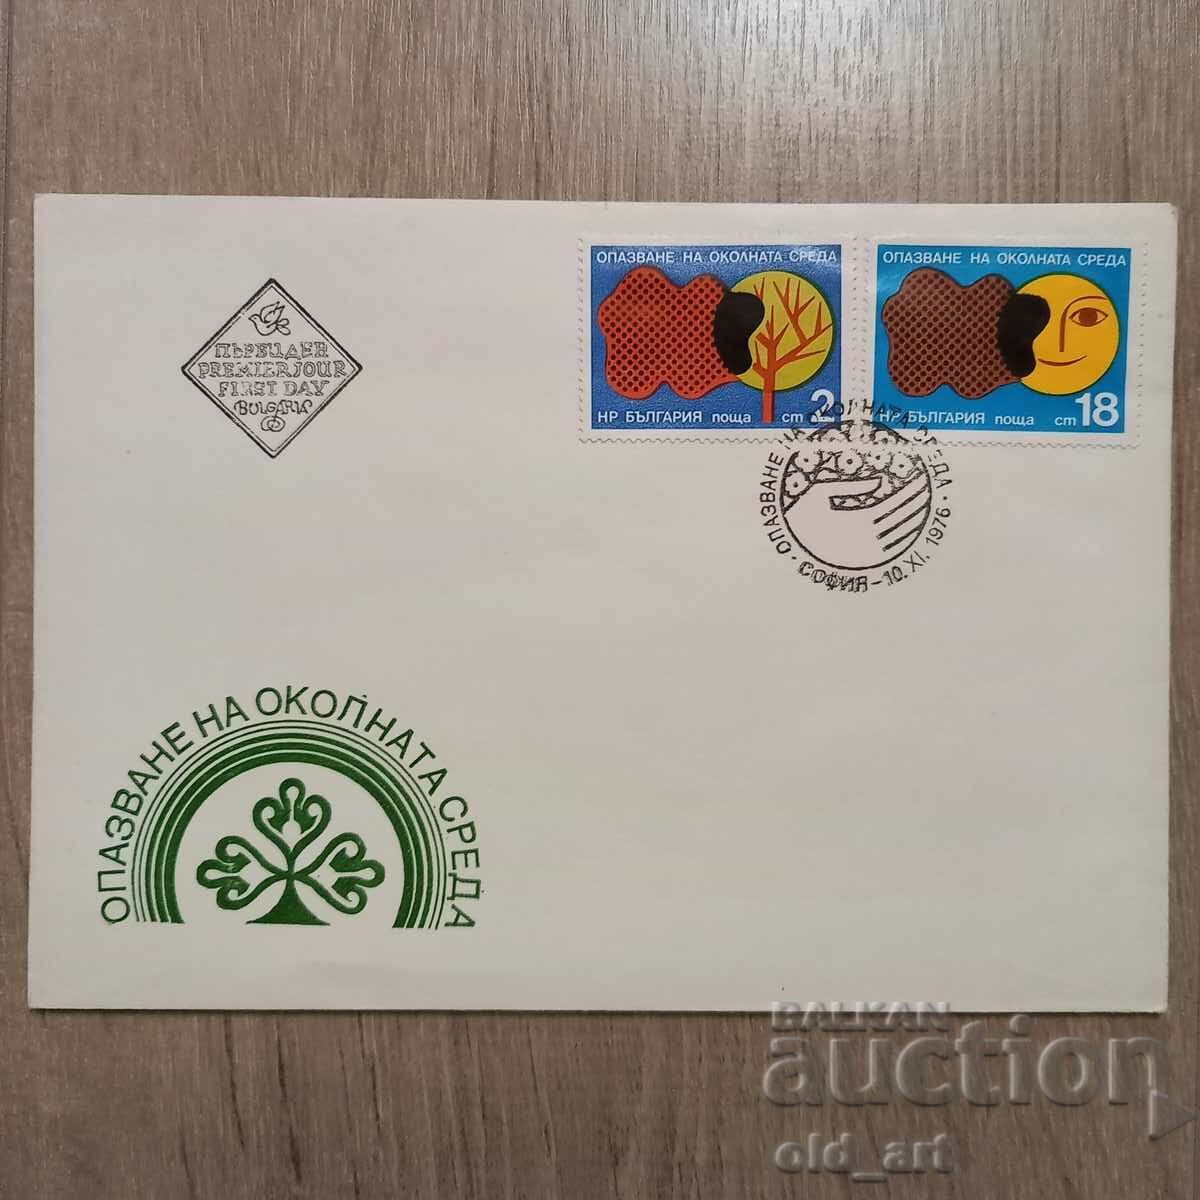 Ταχυδρομικός φάκελος - Προστασία του περιβάλλοντος